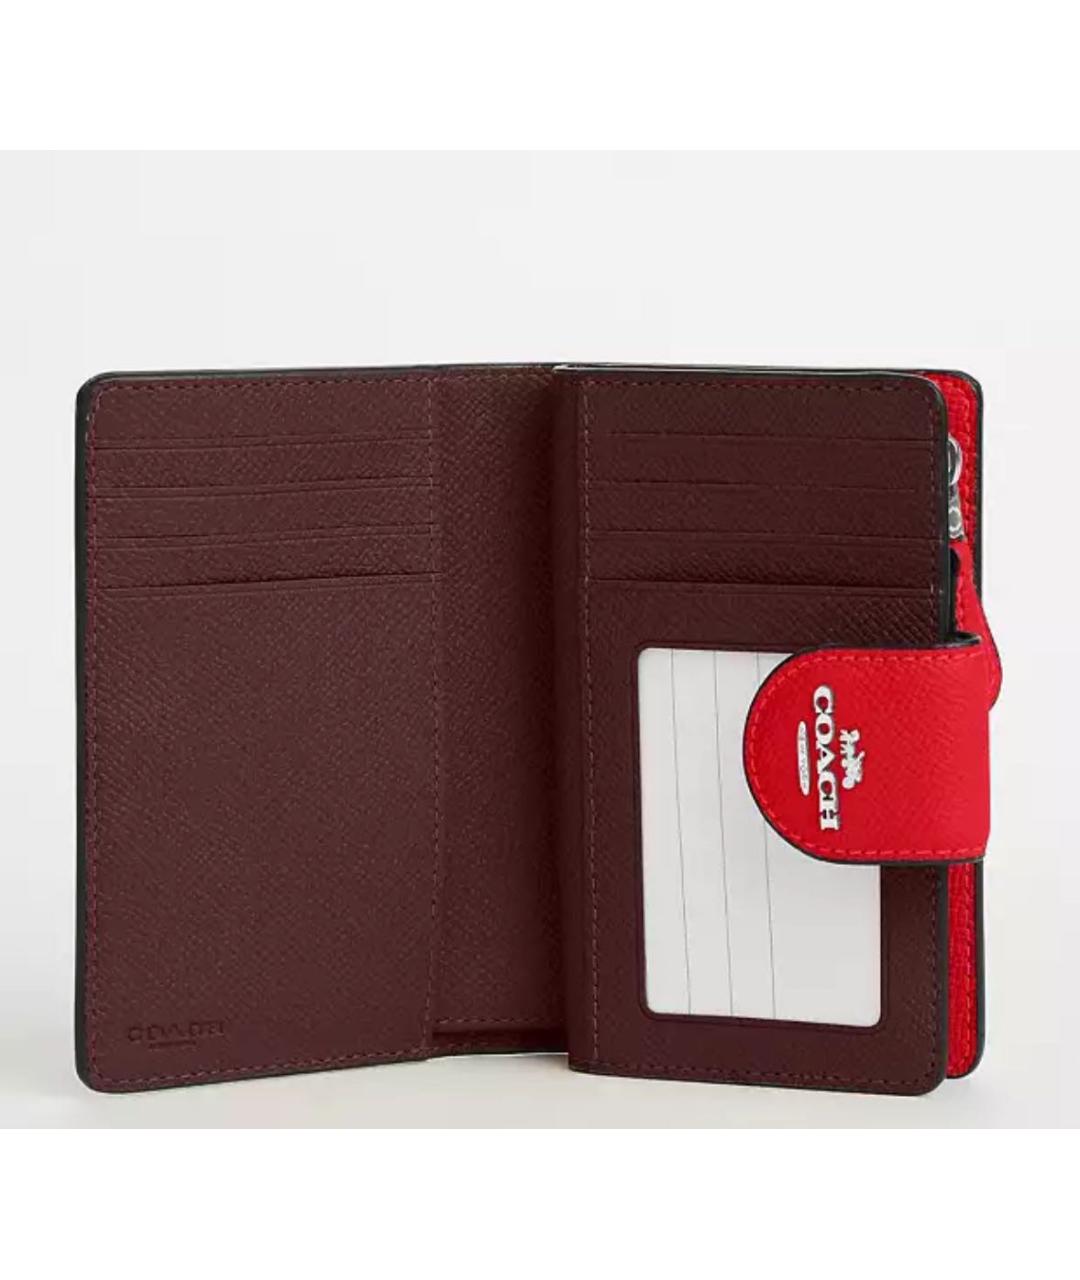 COACH Красный кожаный кошелек, фото 4